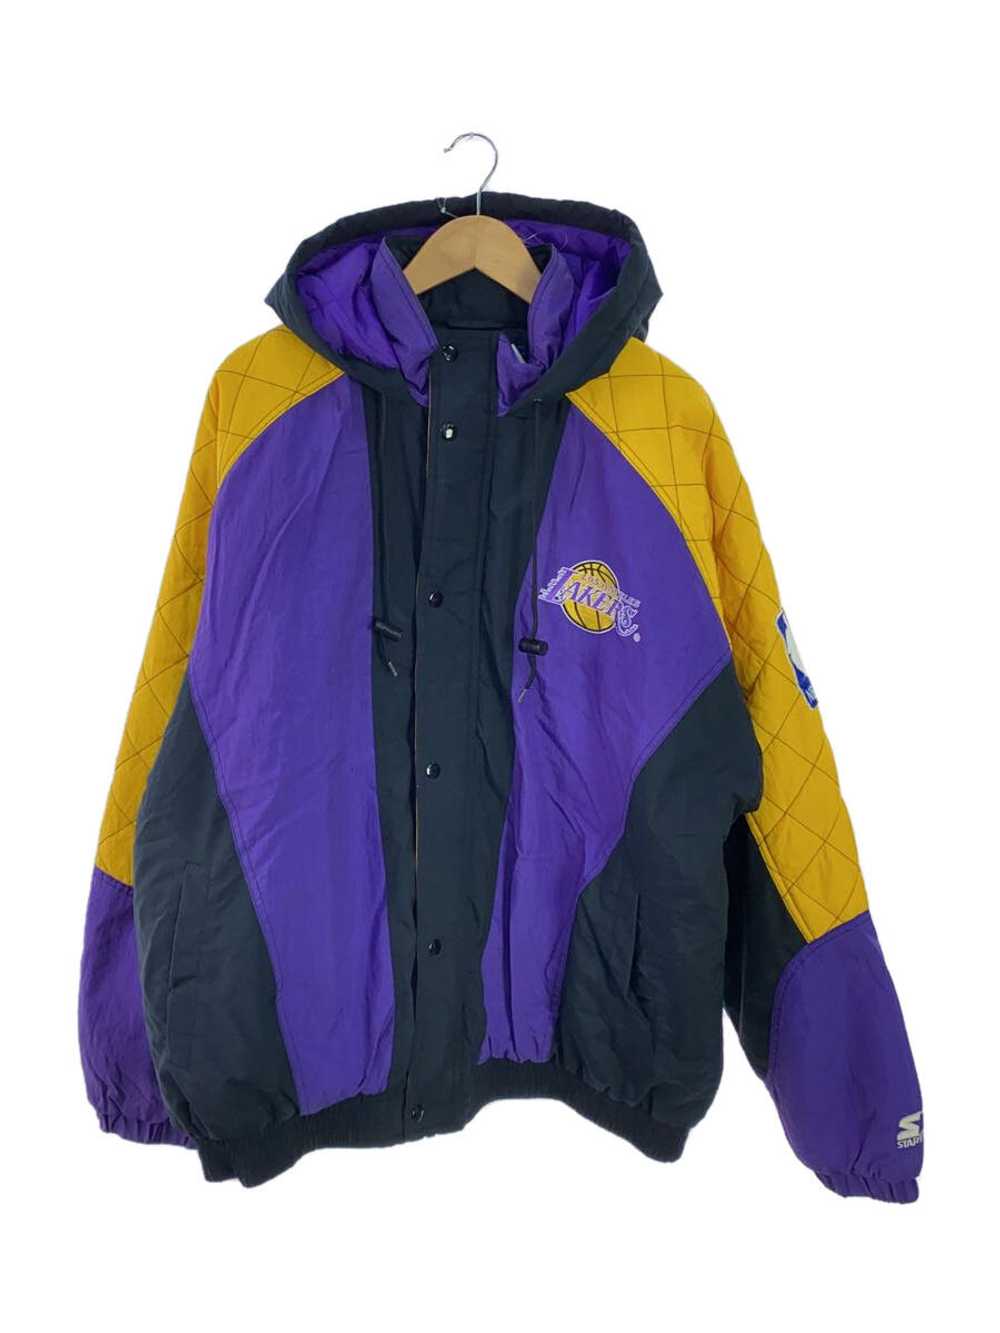 Men's Starter 90S/Lakers/Jacket/Xxl/Nylon/Pup - image 2